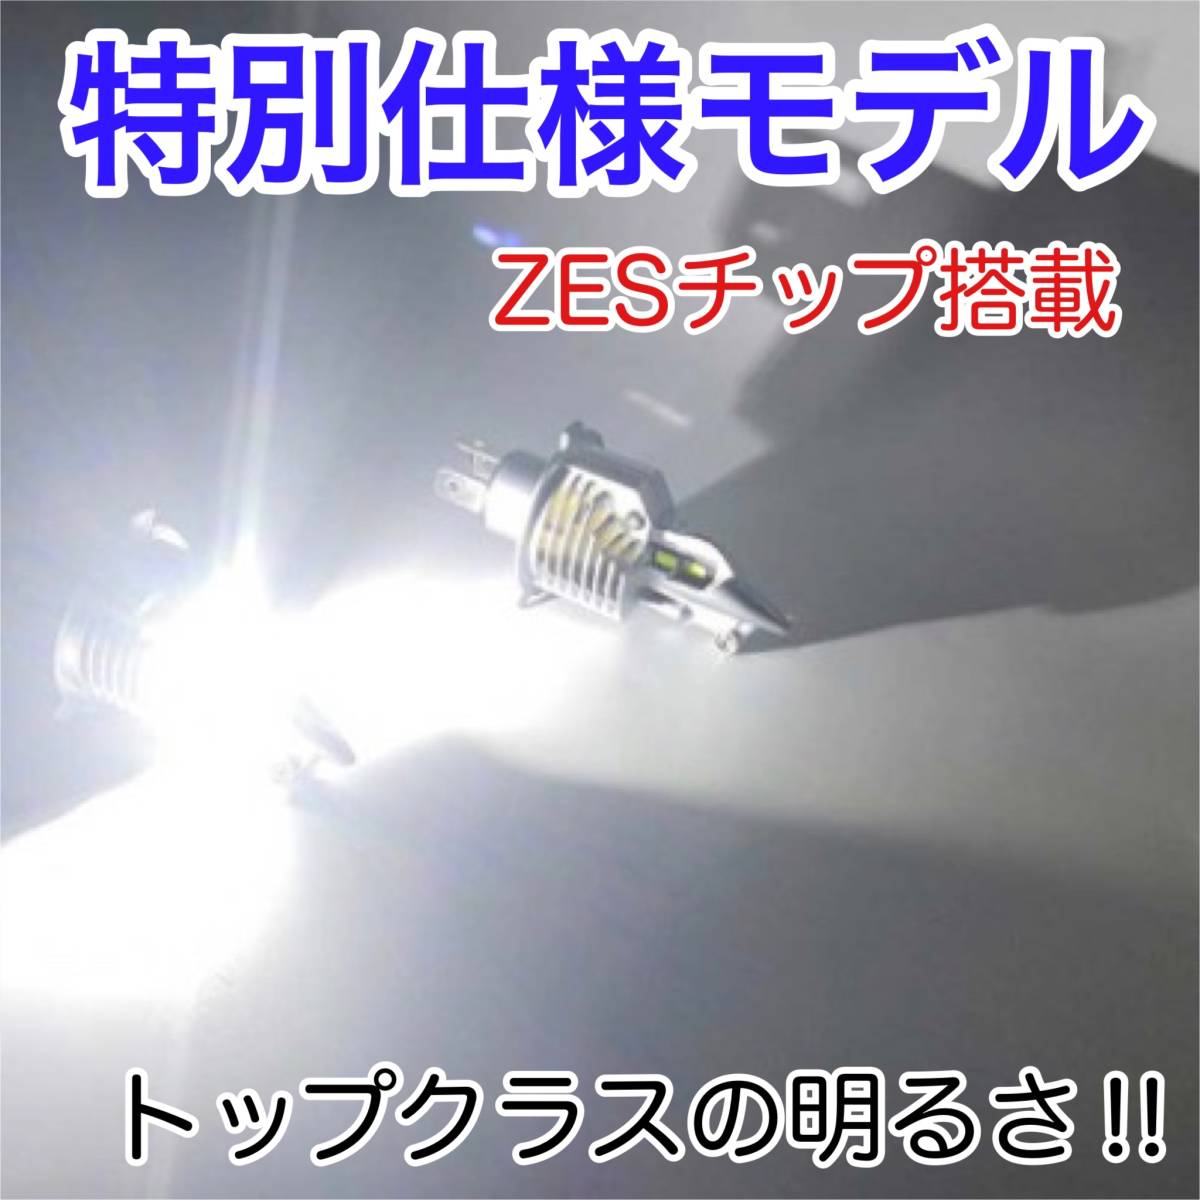 SUZUKI スズキ イントルーダーLC250BA-VJ51A LED H4 LEDヘッドライト Hi/Lo バルブ バイク用 1灯 ホワイト 交換用_画像2